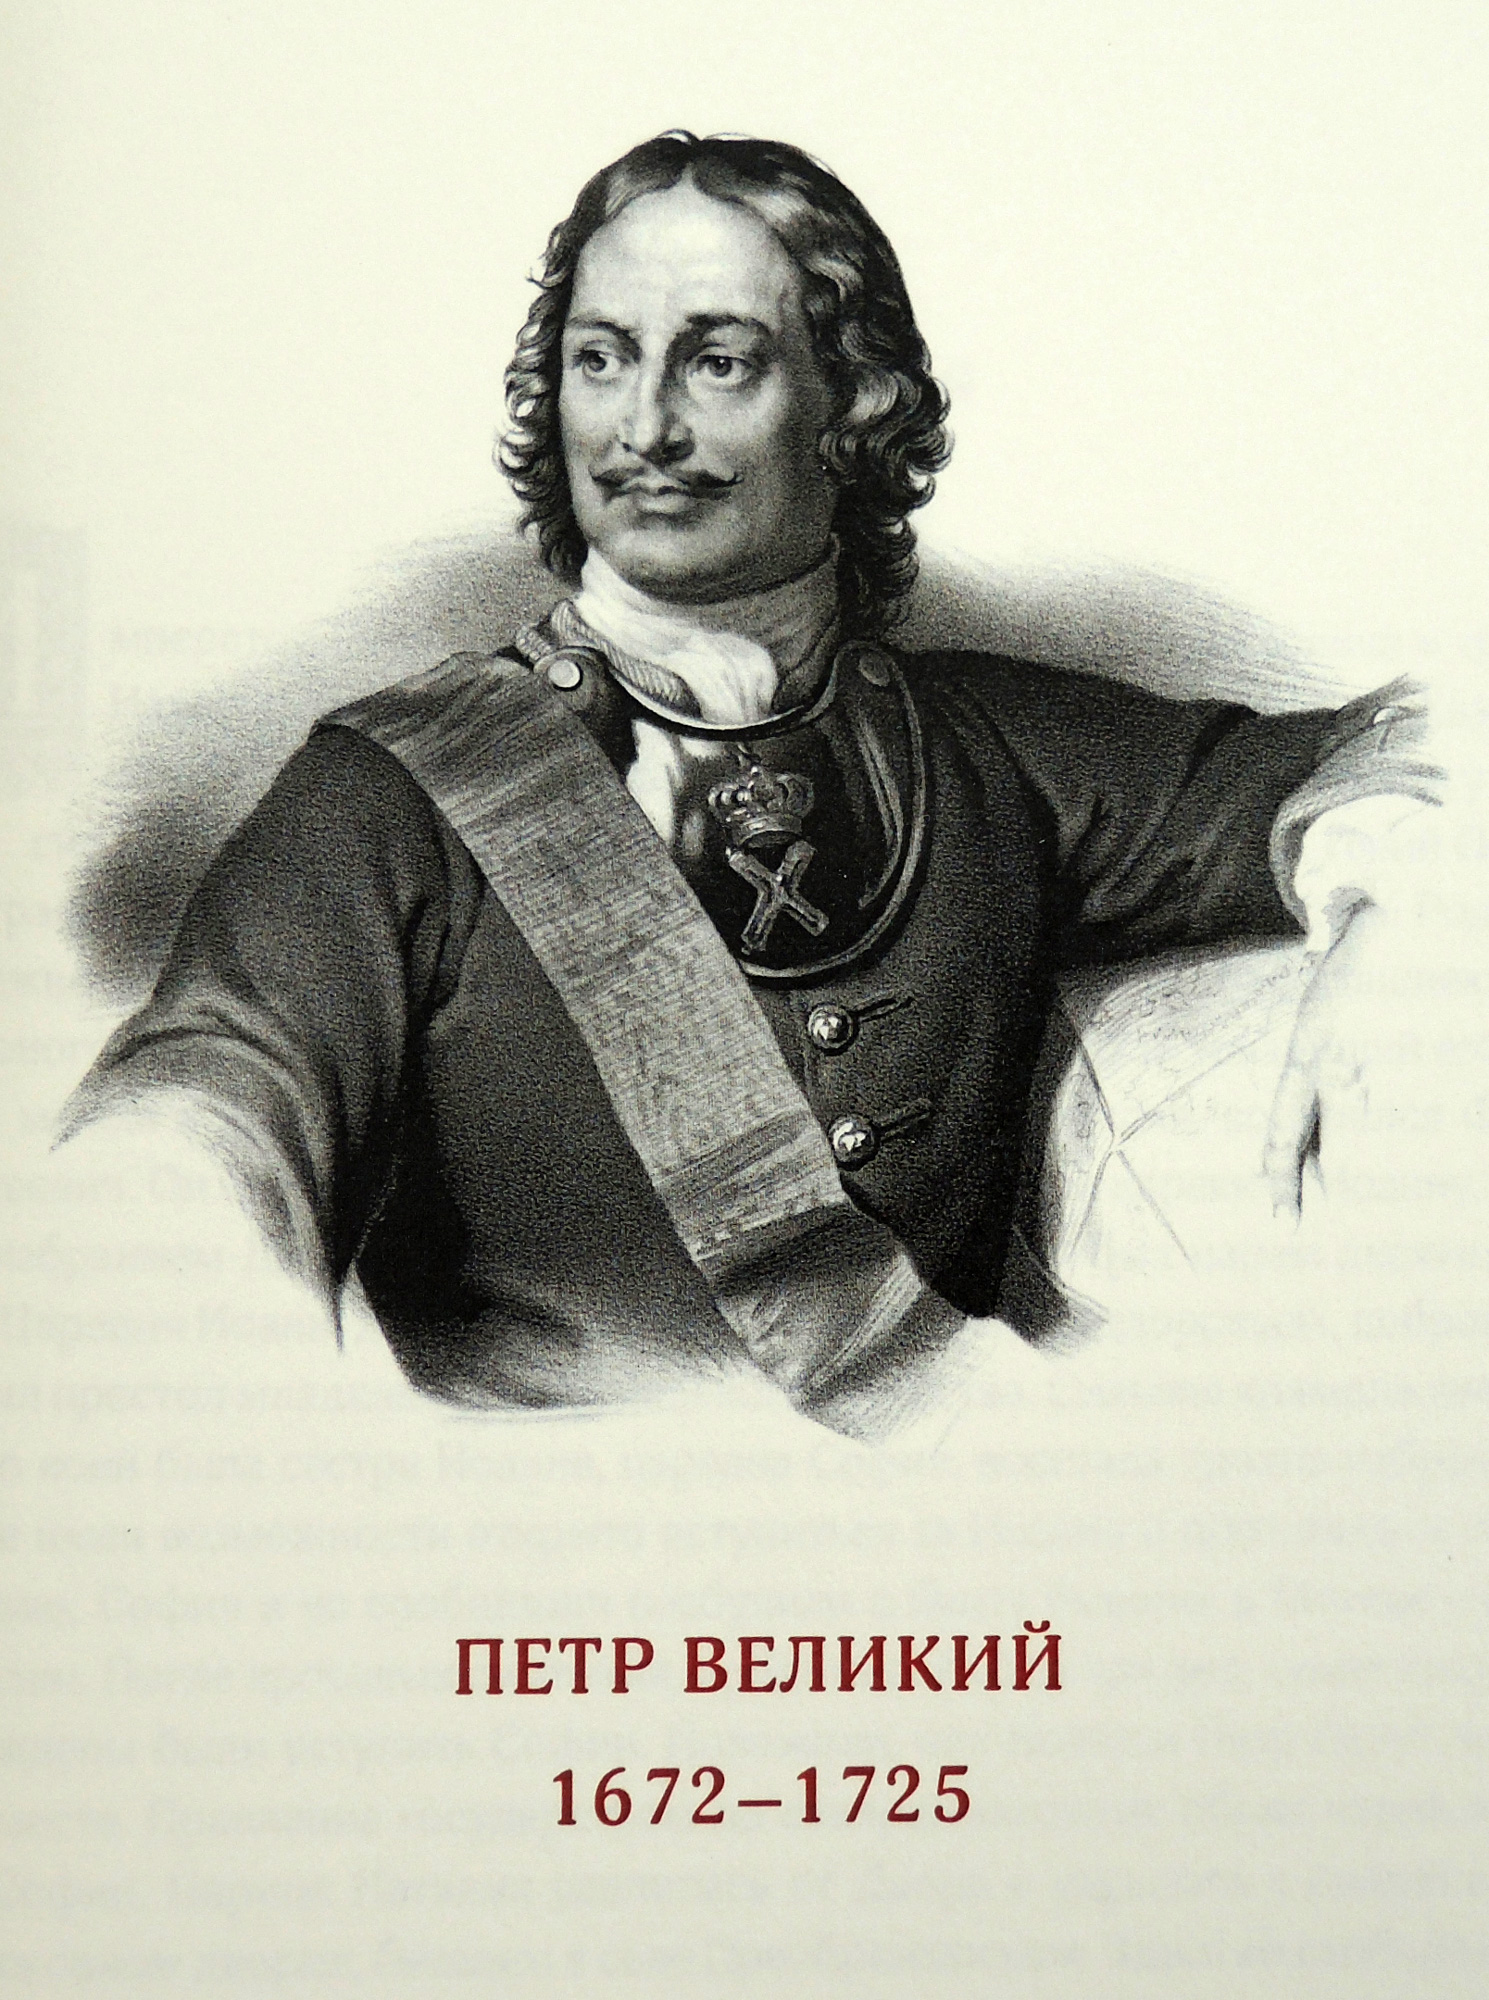 Книга «Русские полководцы»